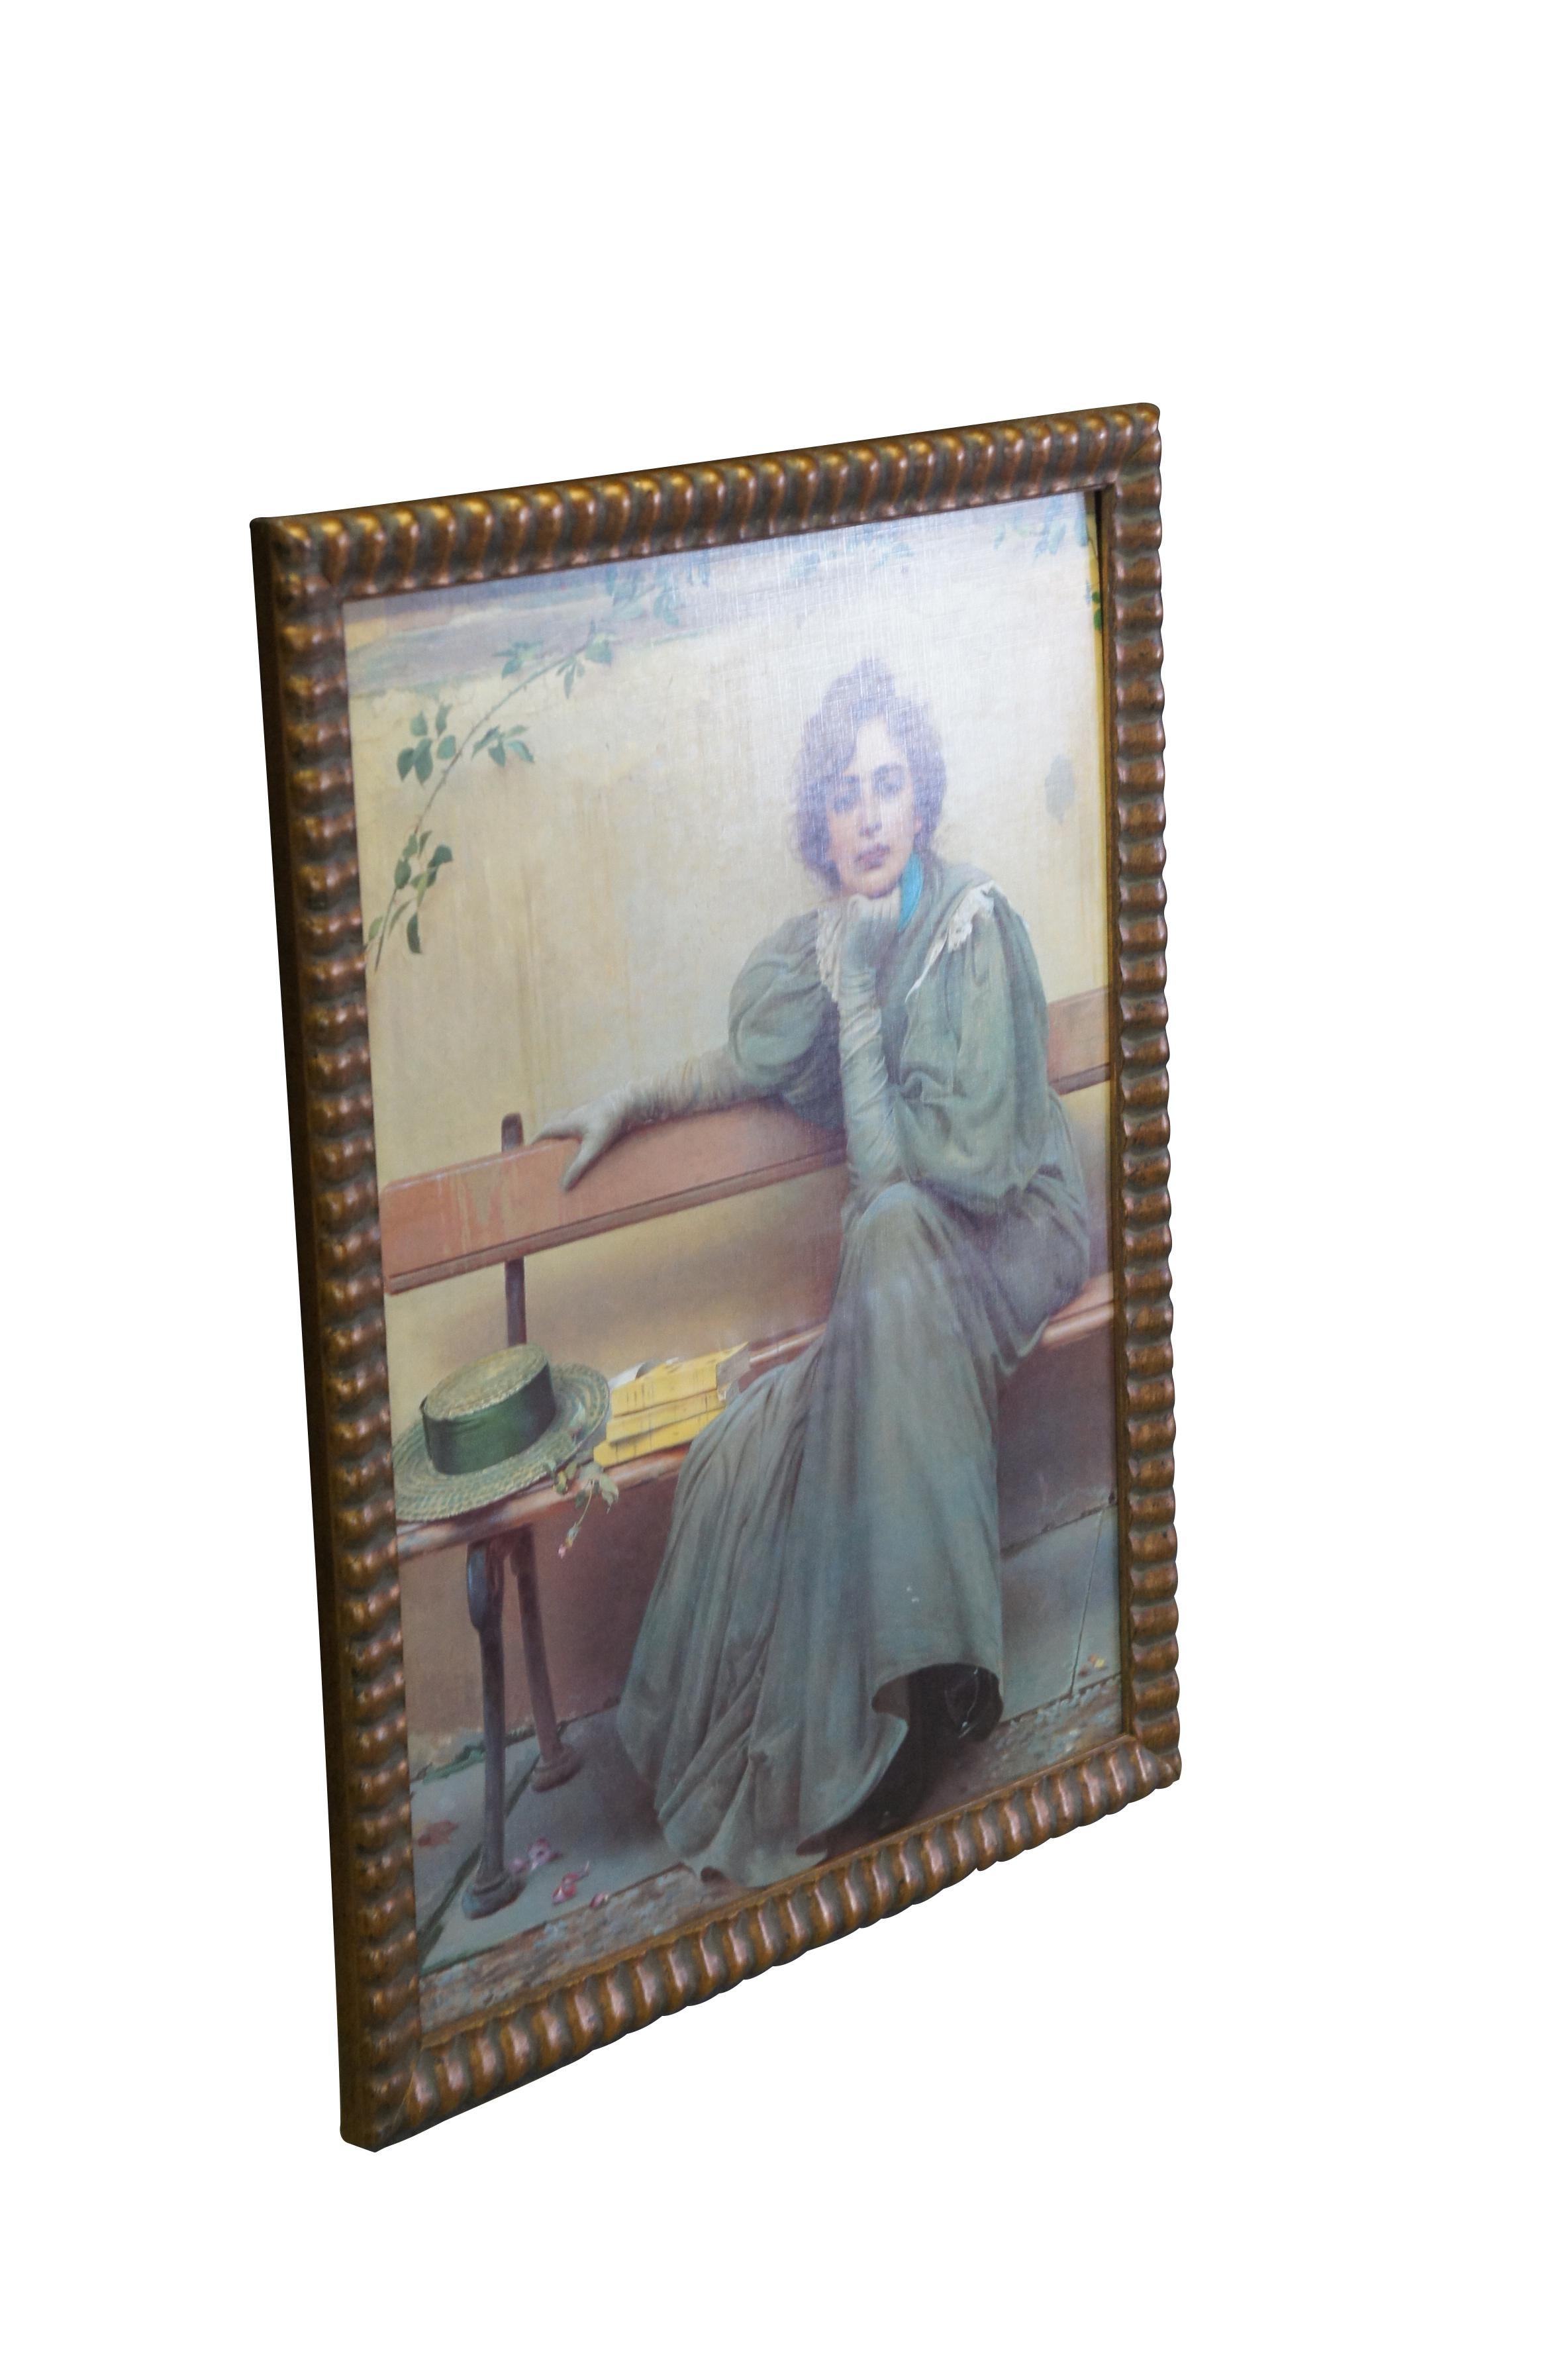 Vintage framed print on board of Dreams by Vittorio Matteo Corcos, originally painted in 1896.  Une femme en tenue victorienne assise sur un banc à côté de ses livres et de son chapeau, rêvant et regardant au loin. 

Vittorio Matteo Corcos (4